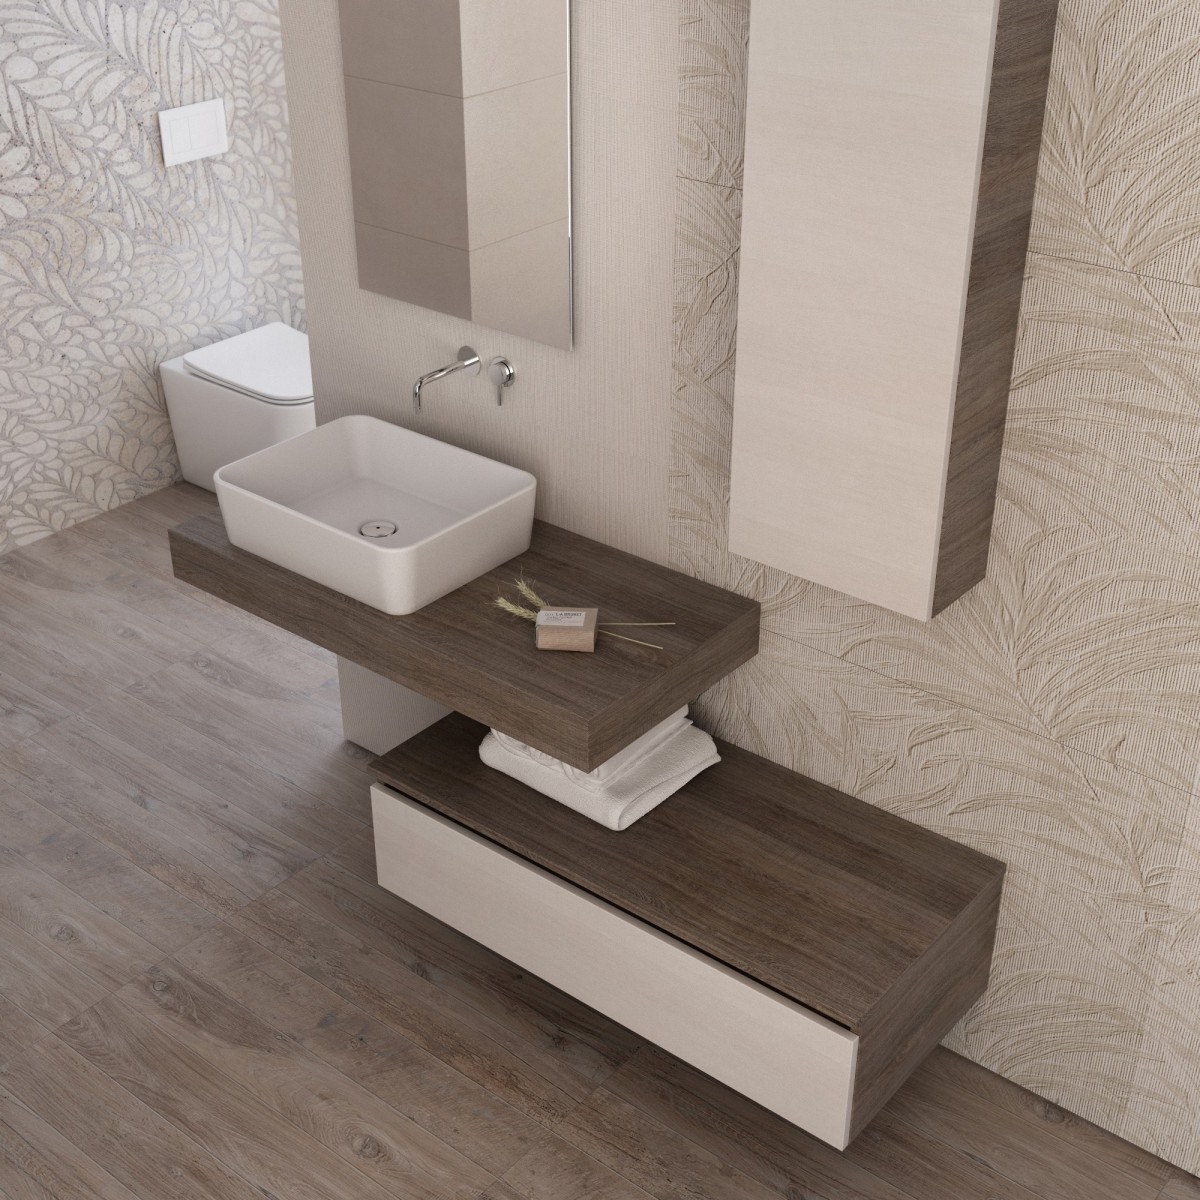 Composition de salle de bain suspendue avec cuvette sur étagère | Duo-750